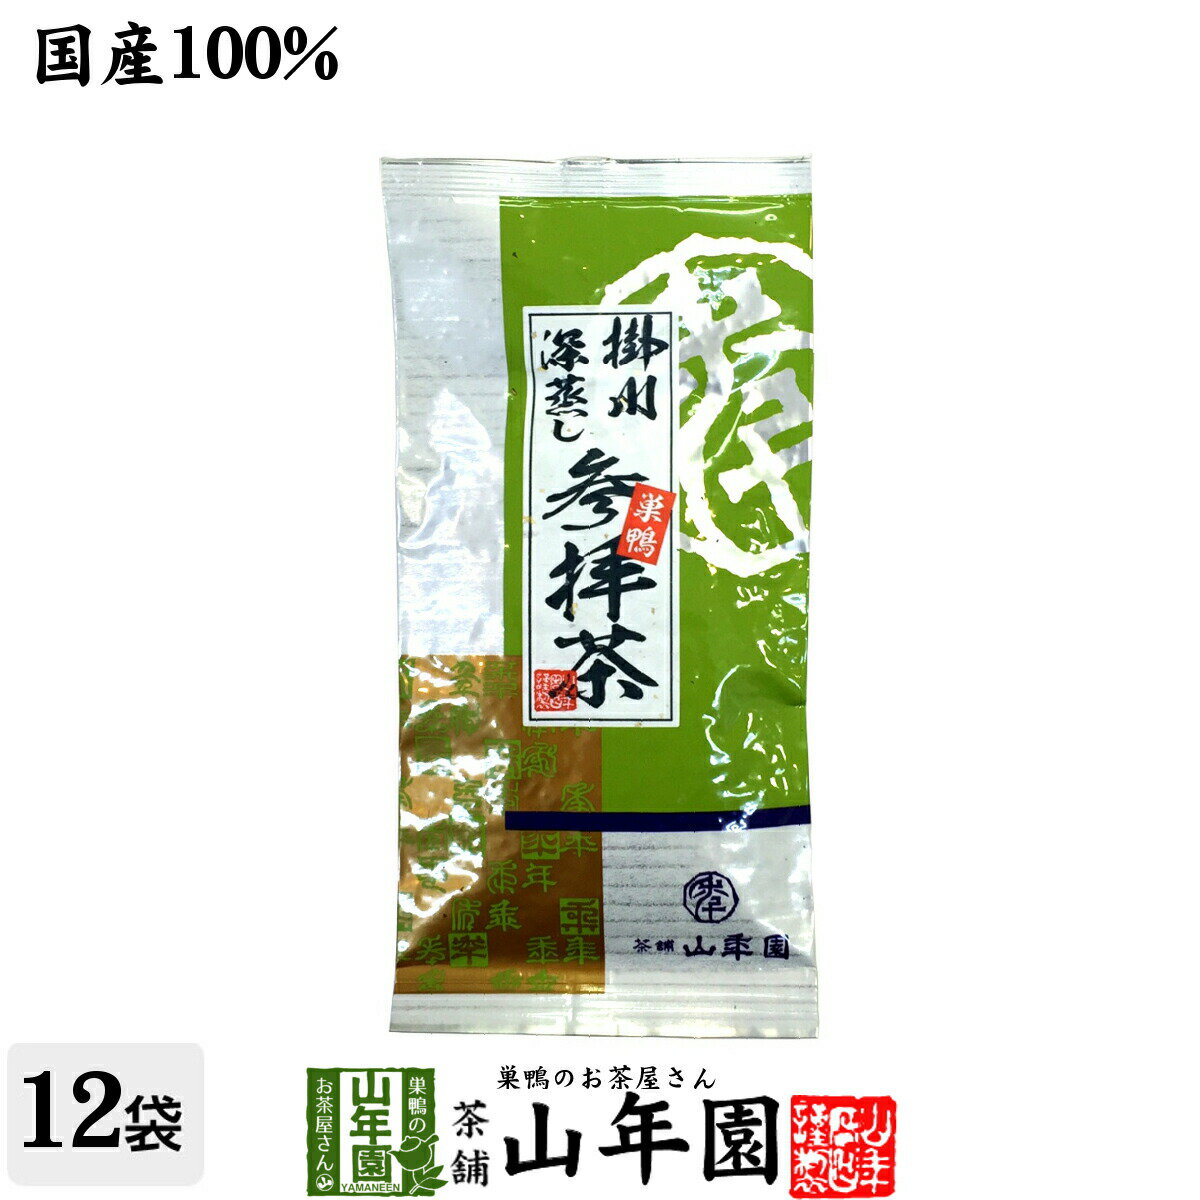 日本茶 お茶 茶葉 巣鴨参拝茶100g×12袋セ...の商品画像